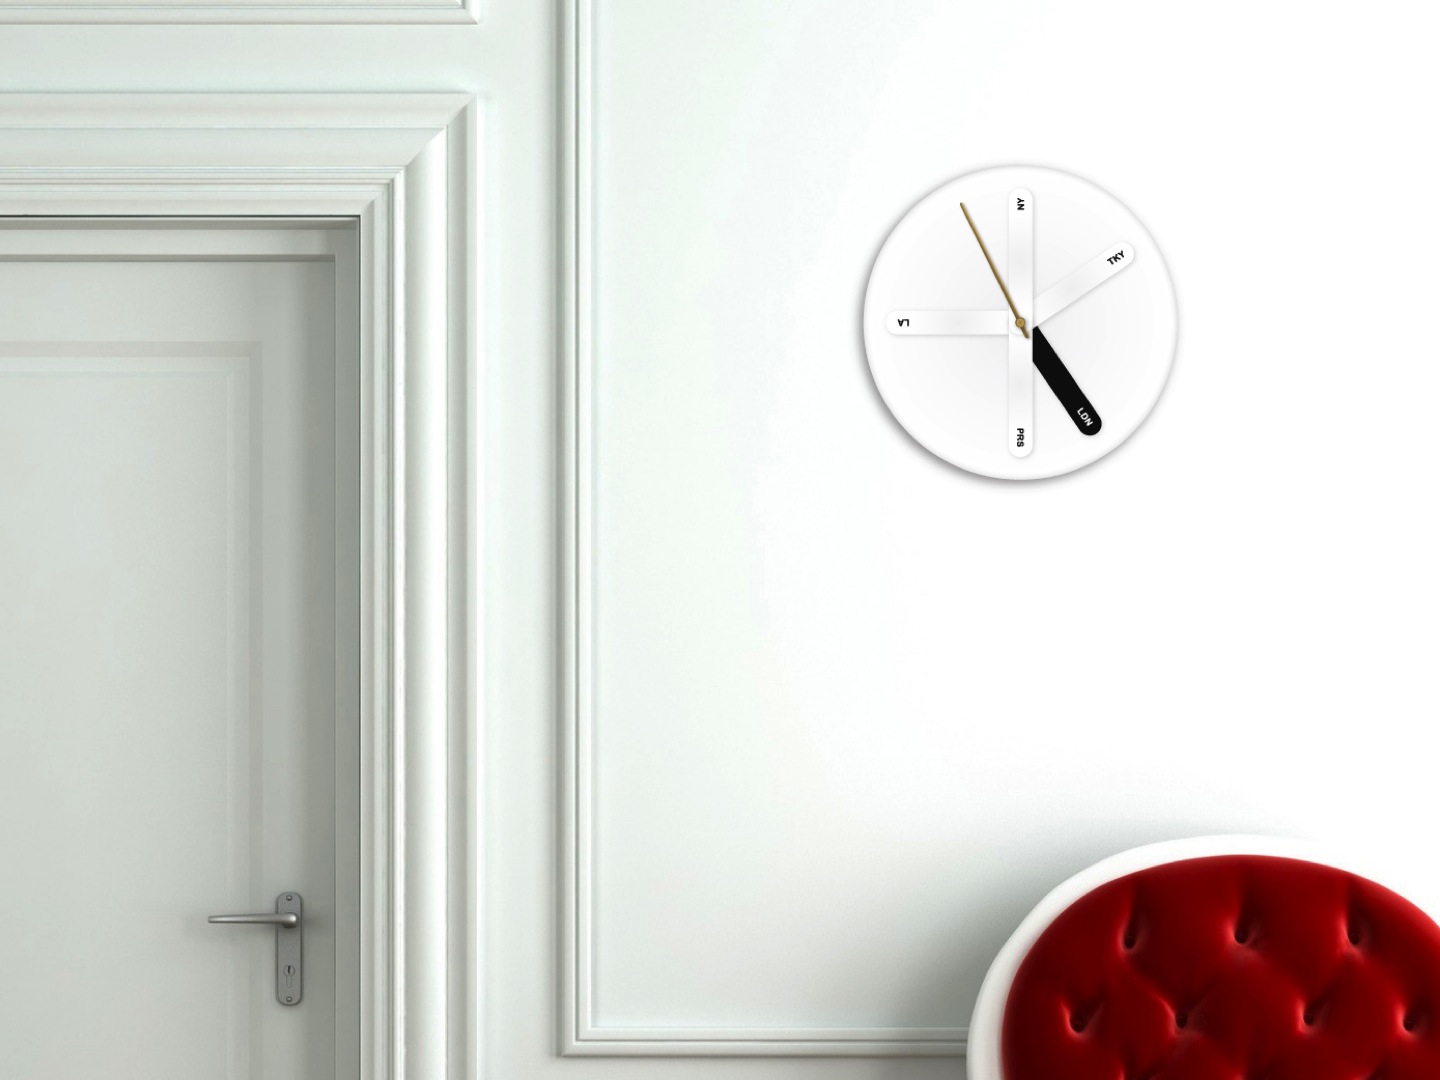 Часы «WRLDCLCK» показывают время сразу нескольких часовых поясов